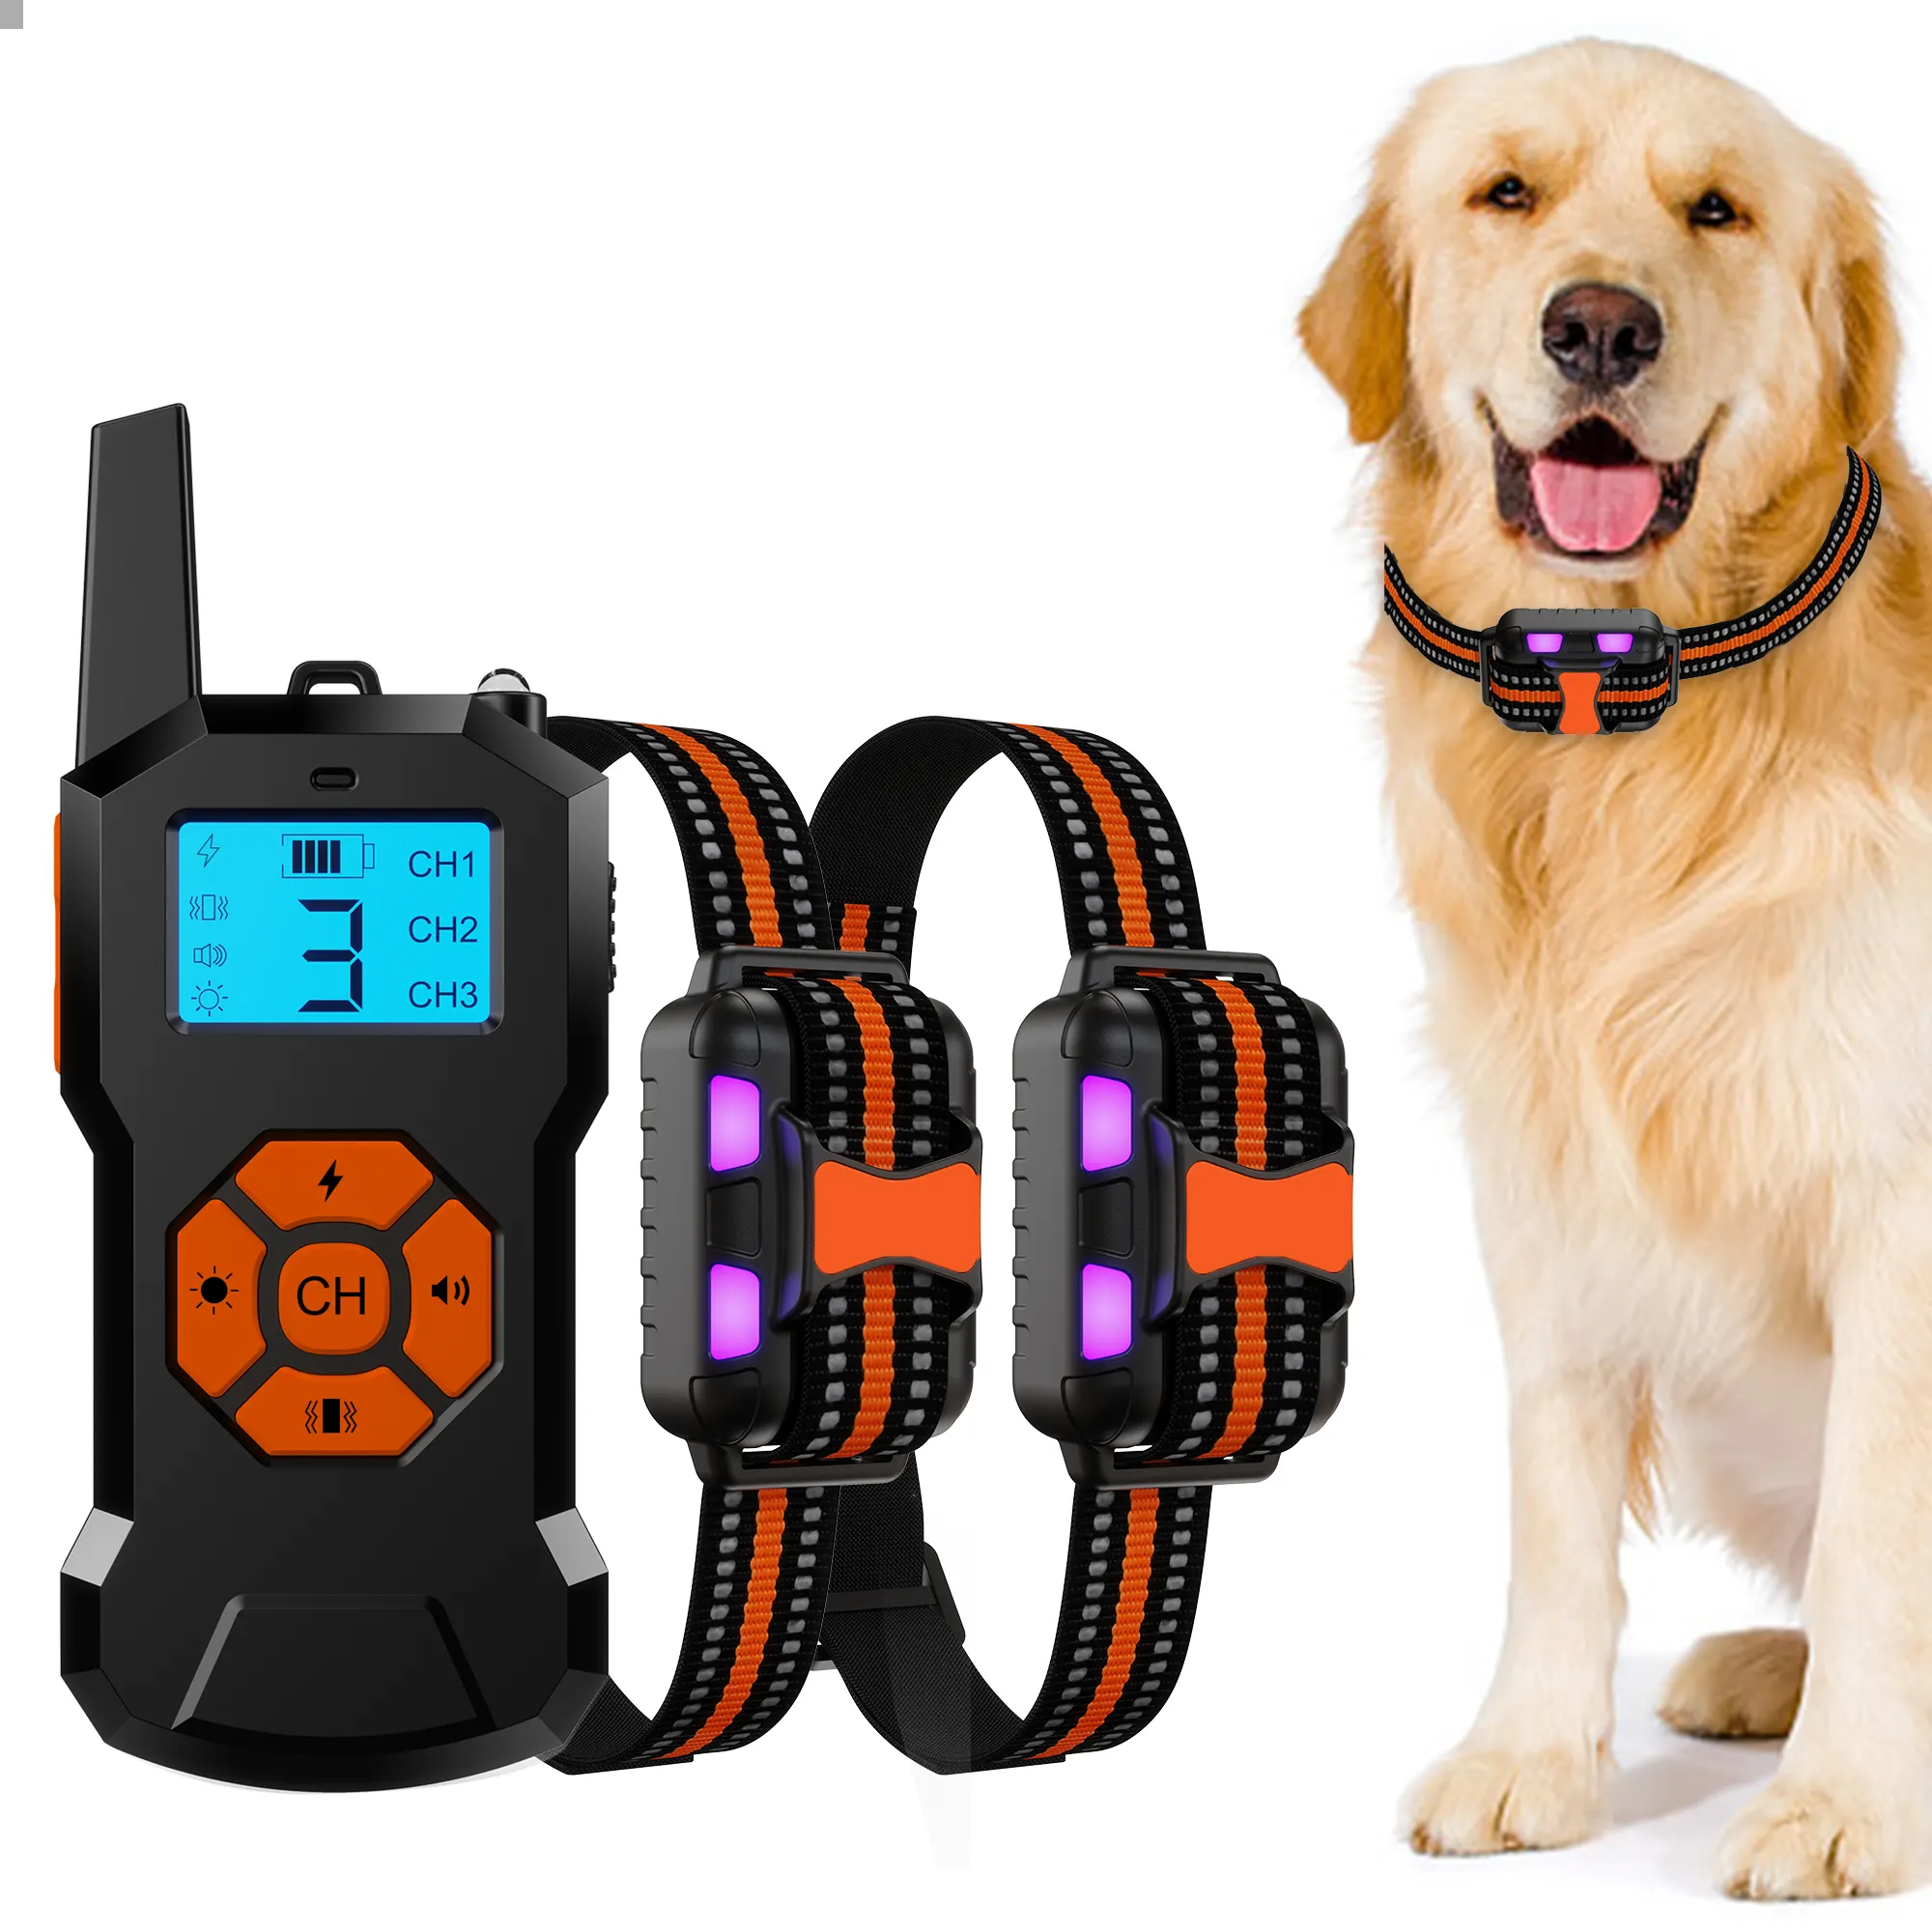 500 jardas IPX7 impermeável vibração elétrica cão treinamento remoto colar choque dog collar com luz LED